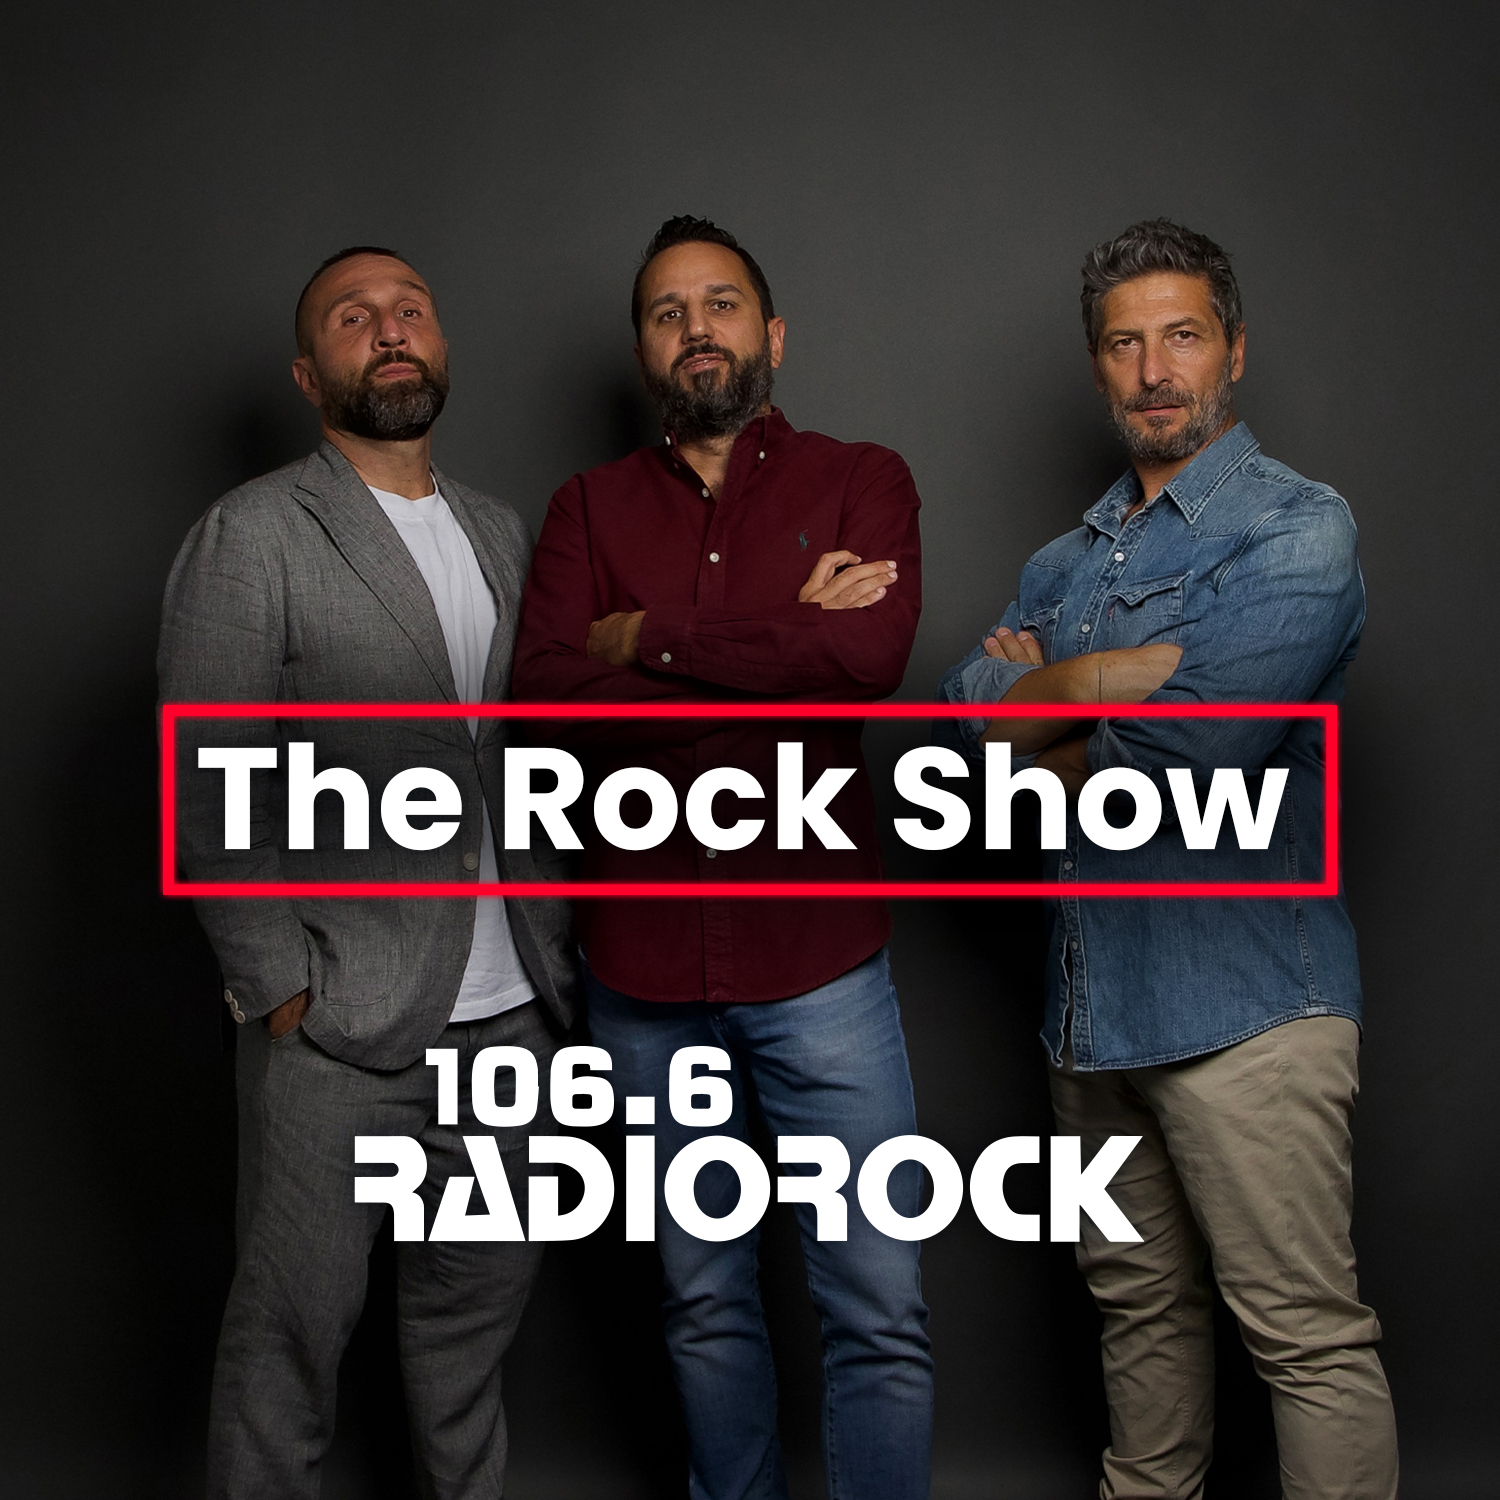 The Rock Show - S07E073: Stamattina la trasmissione langue (15-12-23)